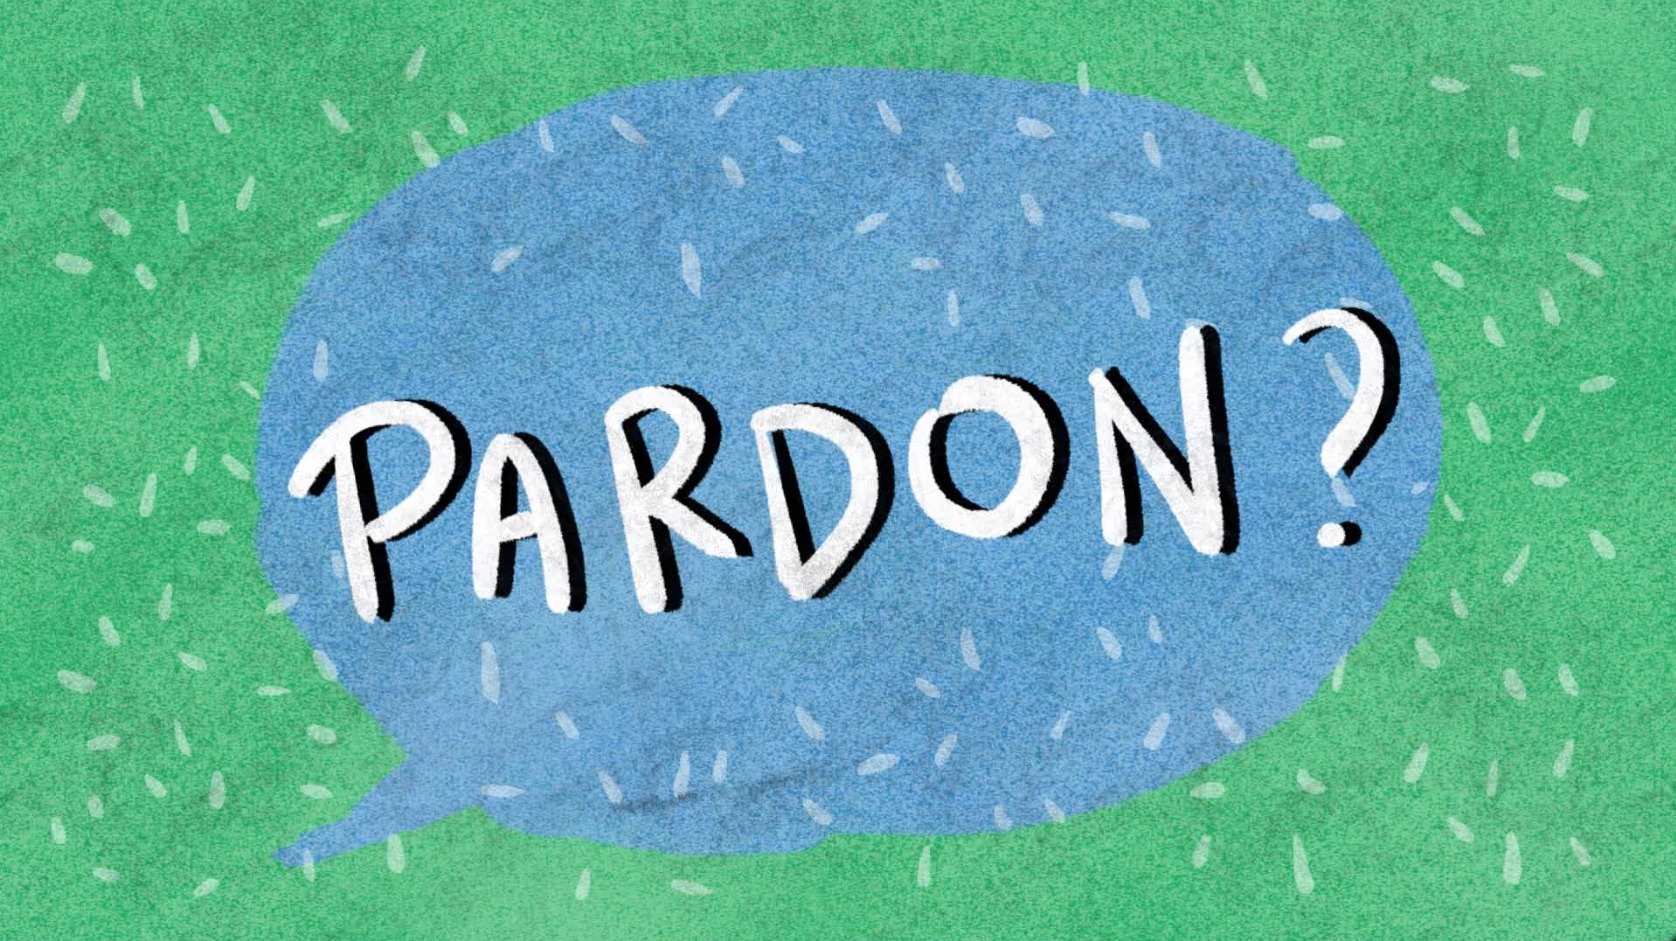 Leer de betekenis van Franse uitdrukkingen kennen met de tekenfilms « Pardon? »